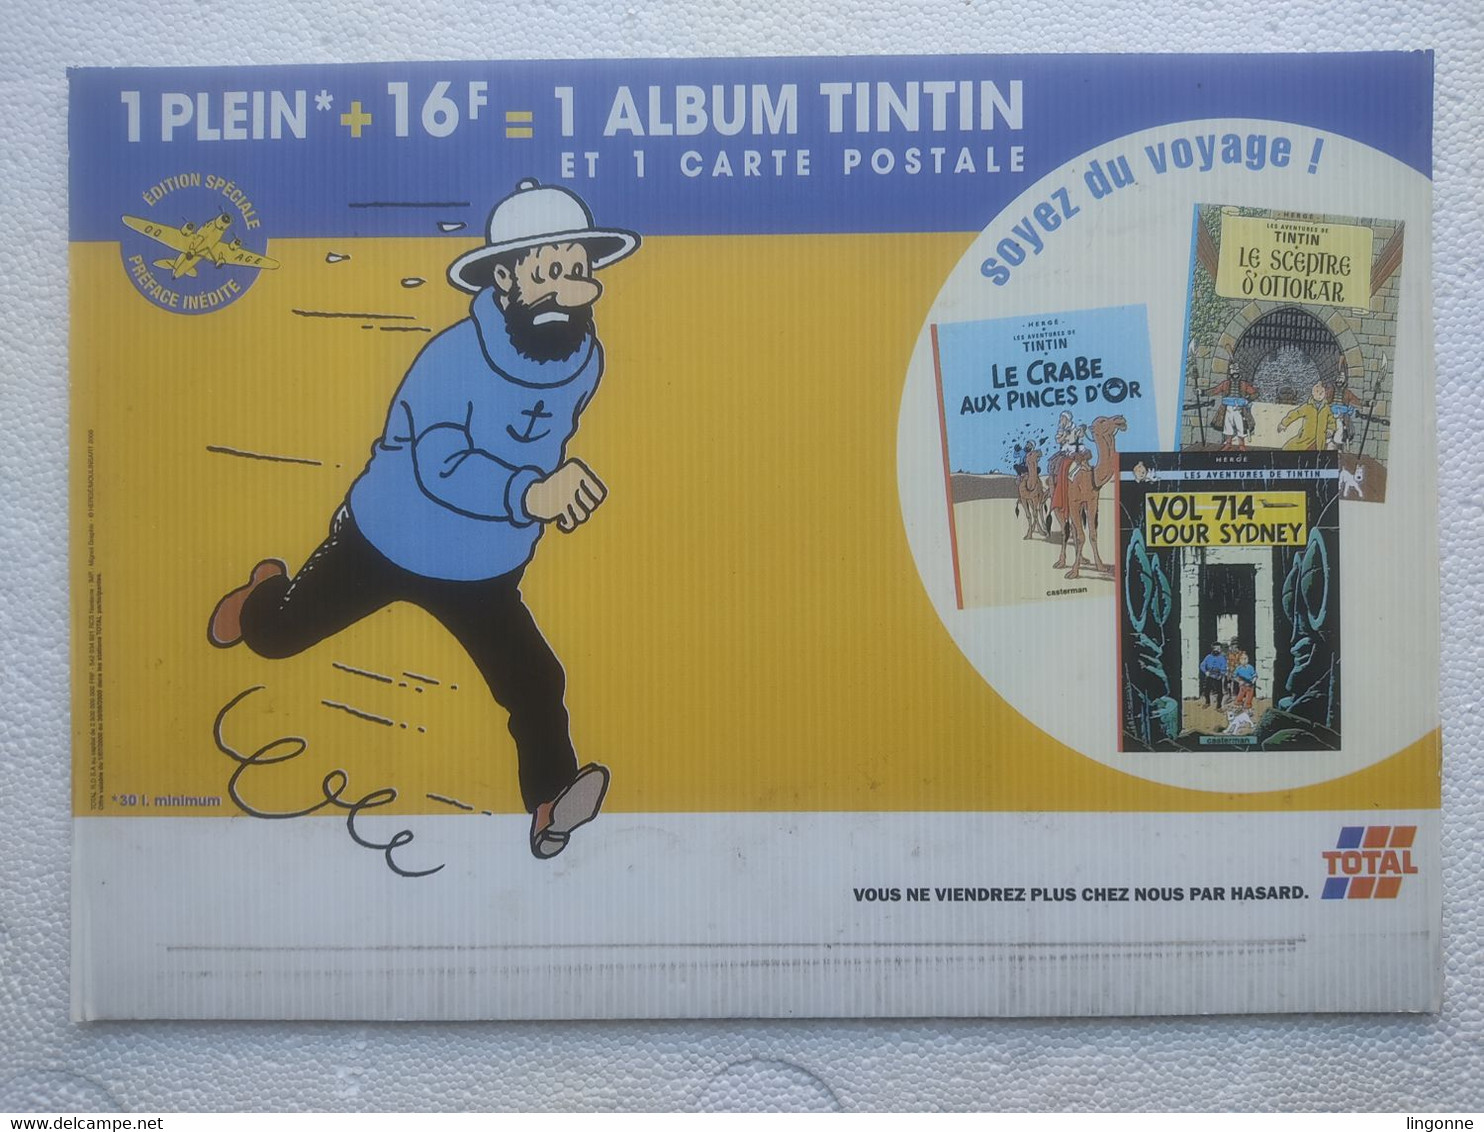 1999 TINTIN PANNEAU PUBLICITAIRE Plastique TOTAL Publicité Sur Point De Vente CAPITAINE HADDOCK Hergé Moulinsart 2000 - Affiches & Offsets